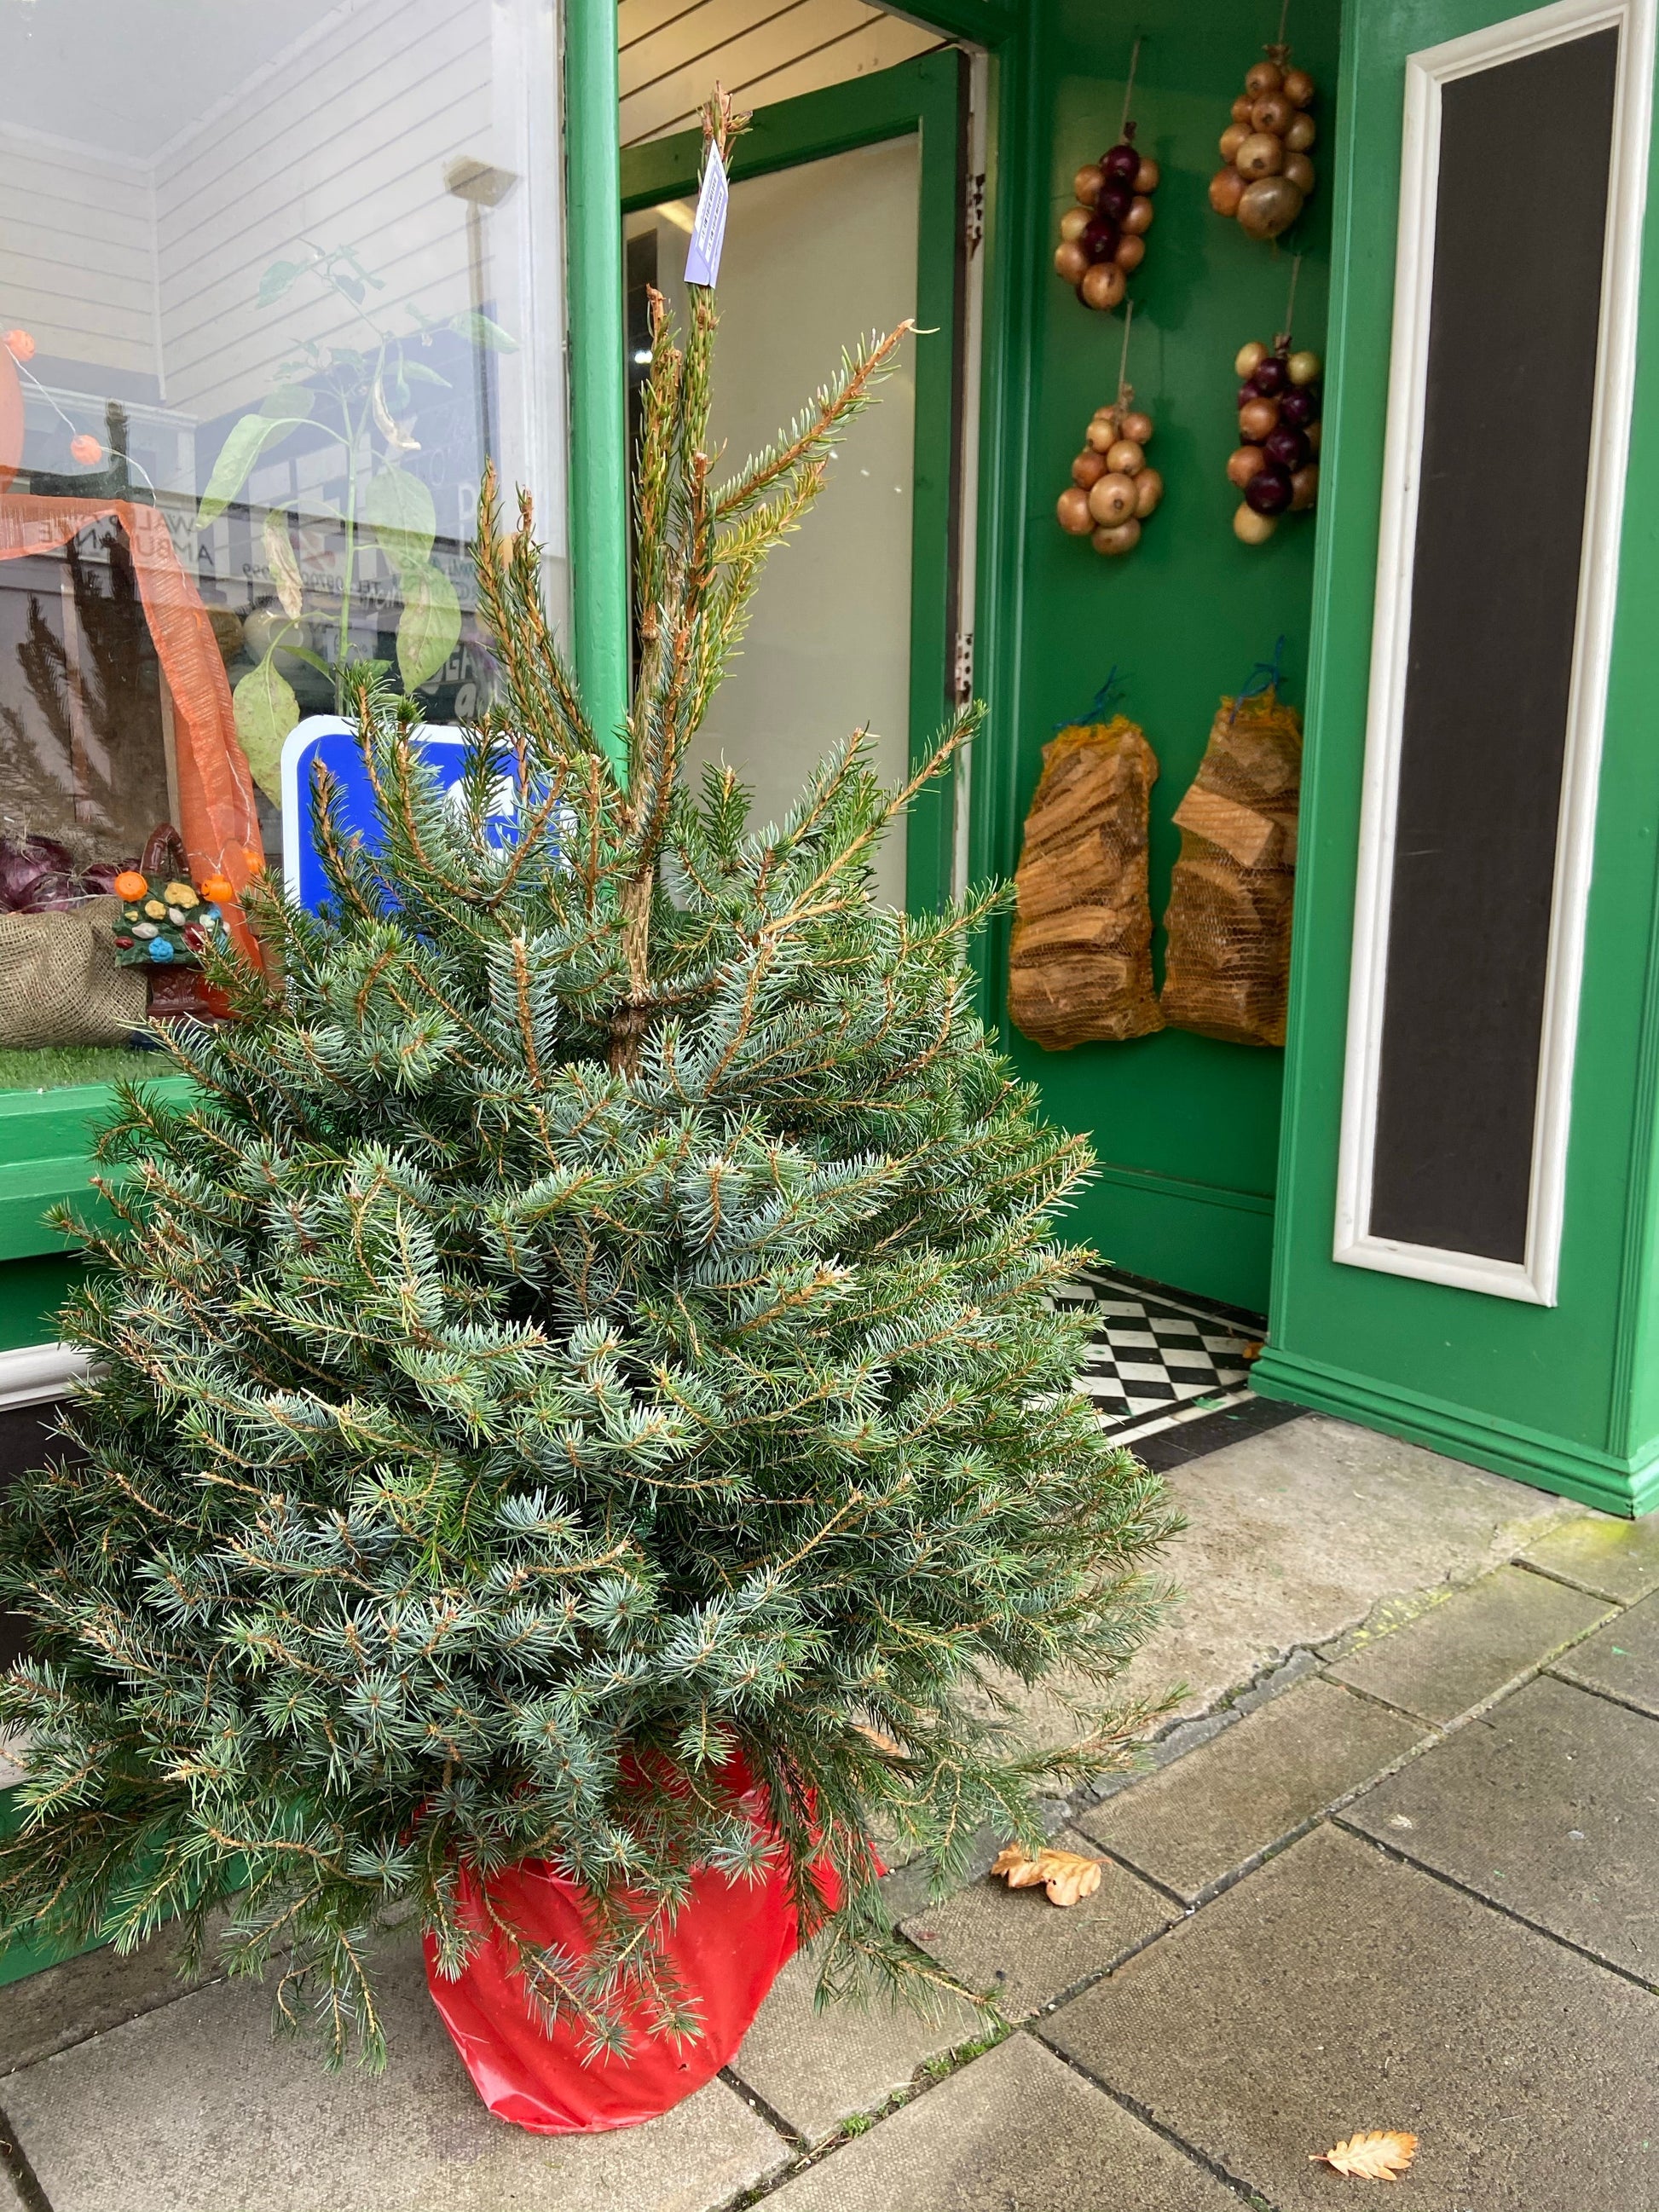 Christmas Trees available in Tywyn Meirionnydd